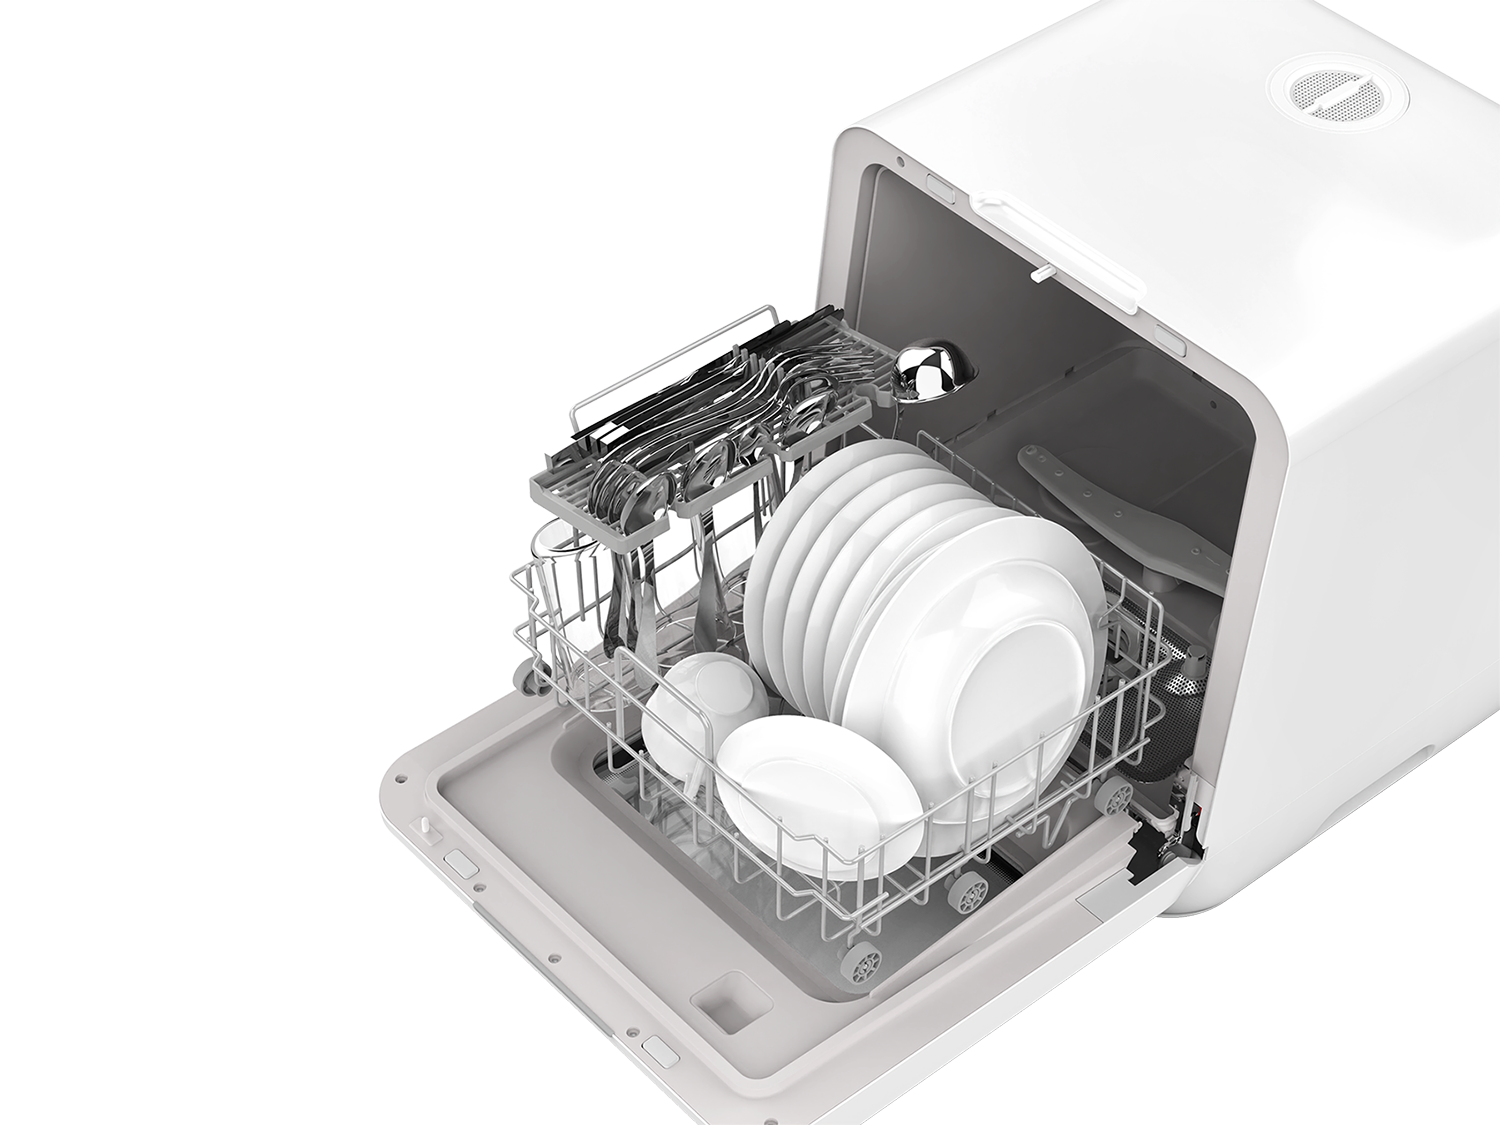 The Countertop Dishwasher - Hammacher Schlemmer